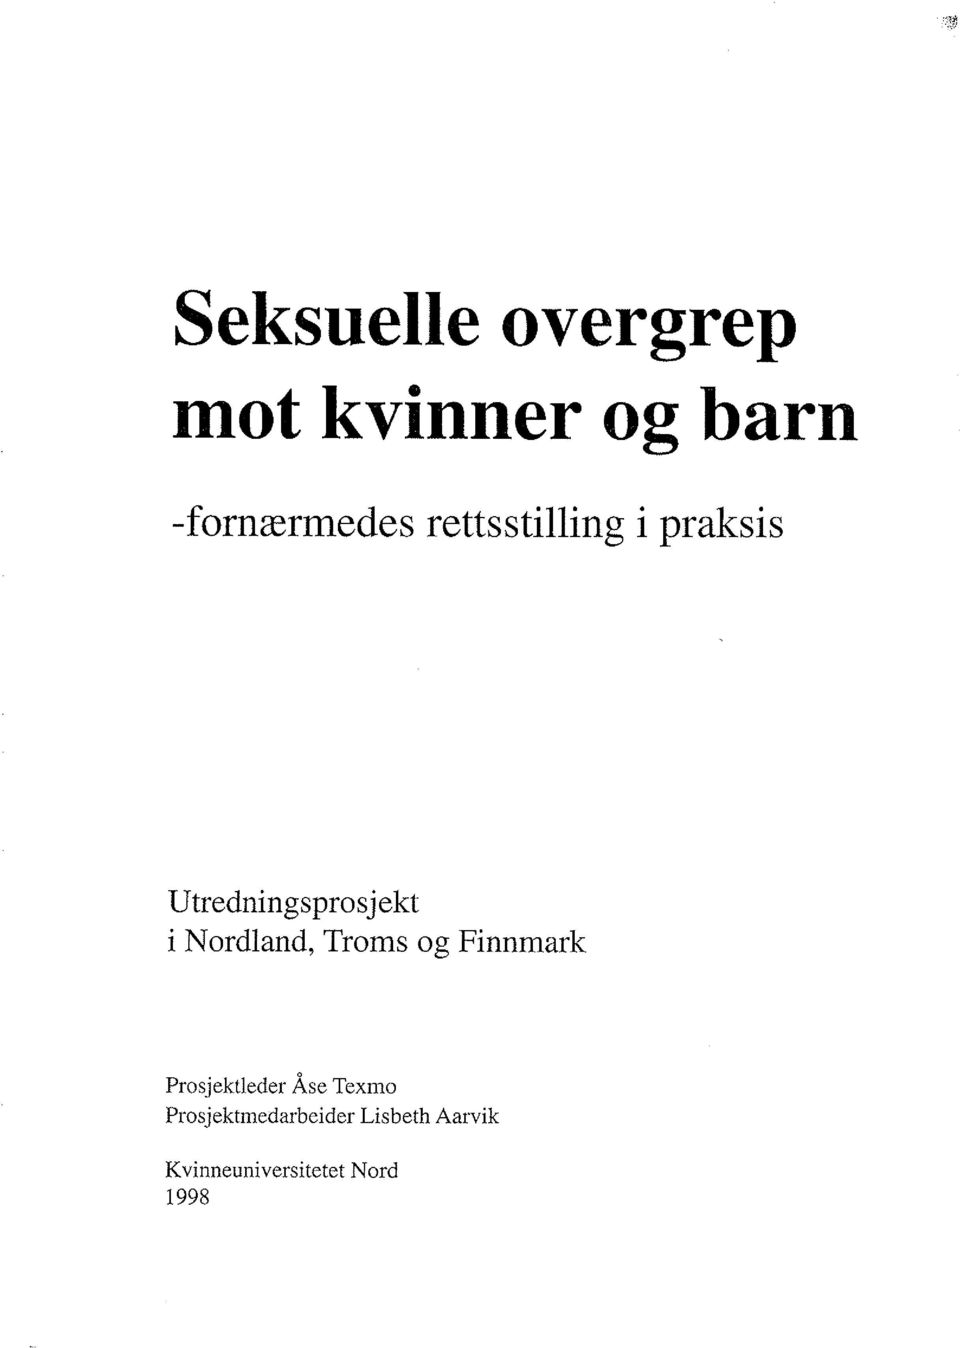 Utredningsprosjekt i Nordland, Troms og Finnmark Prosj